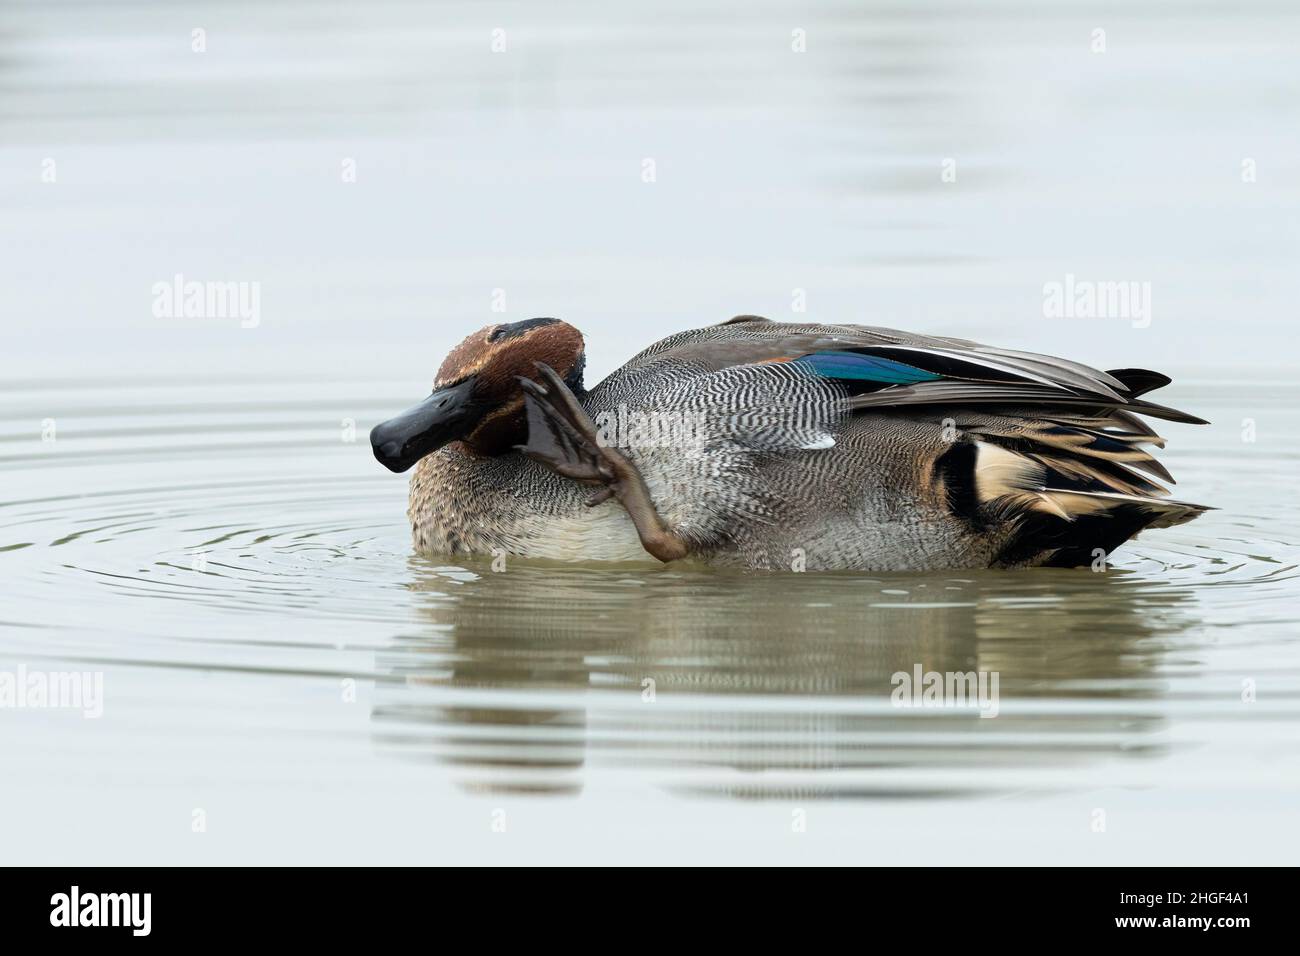 Un Teal eurasiatico (Anas crecca) nuotare in una giornata soleggiata e tranquilla in autunno, grado (Italia), pulizia della testa Foto Stock